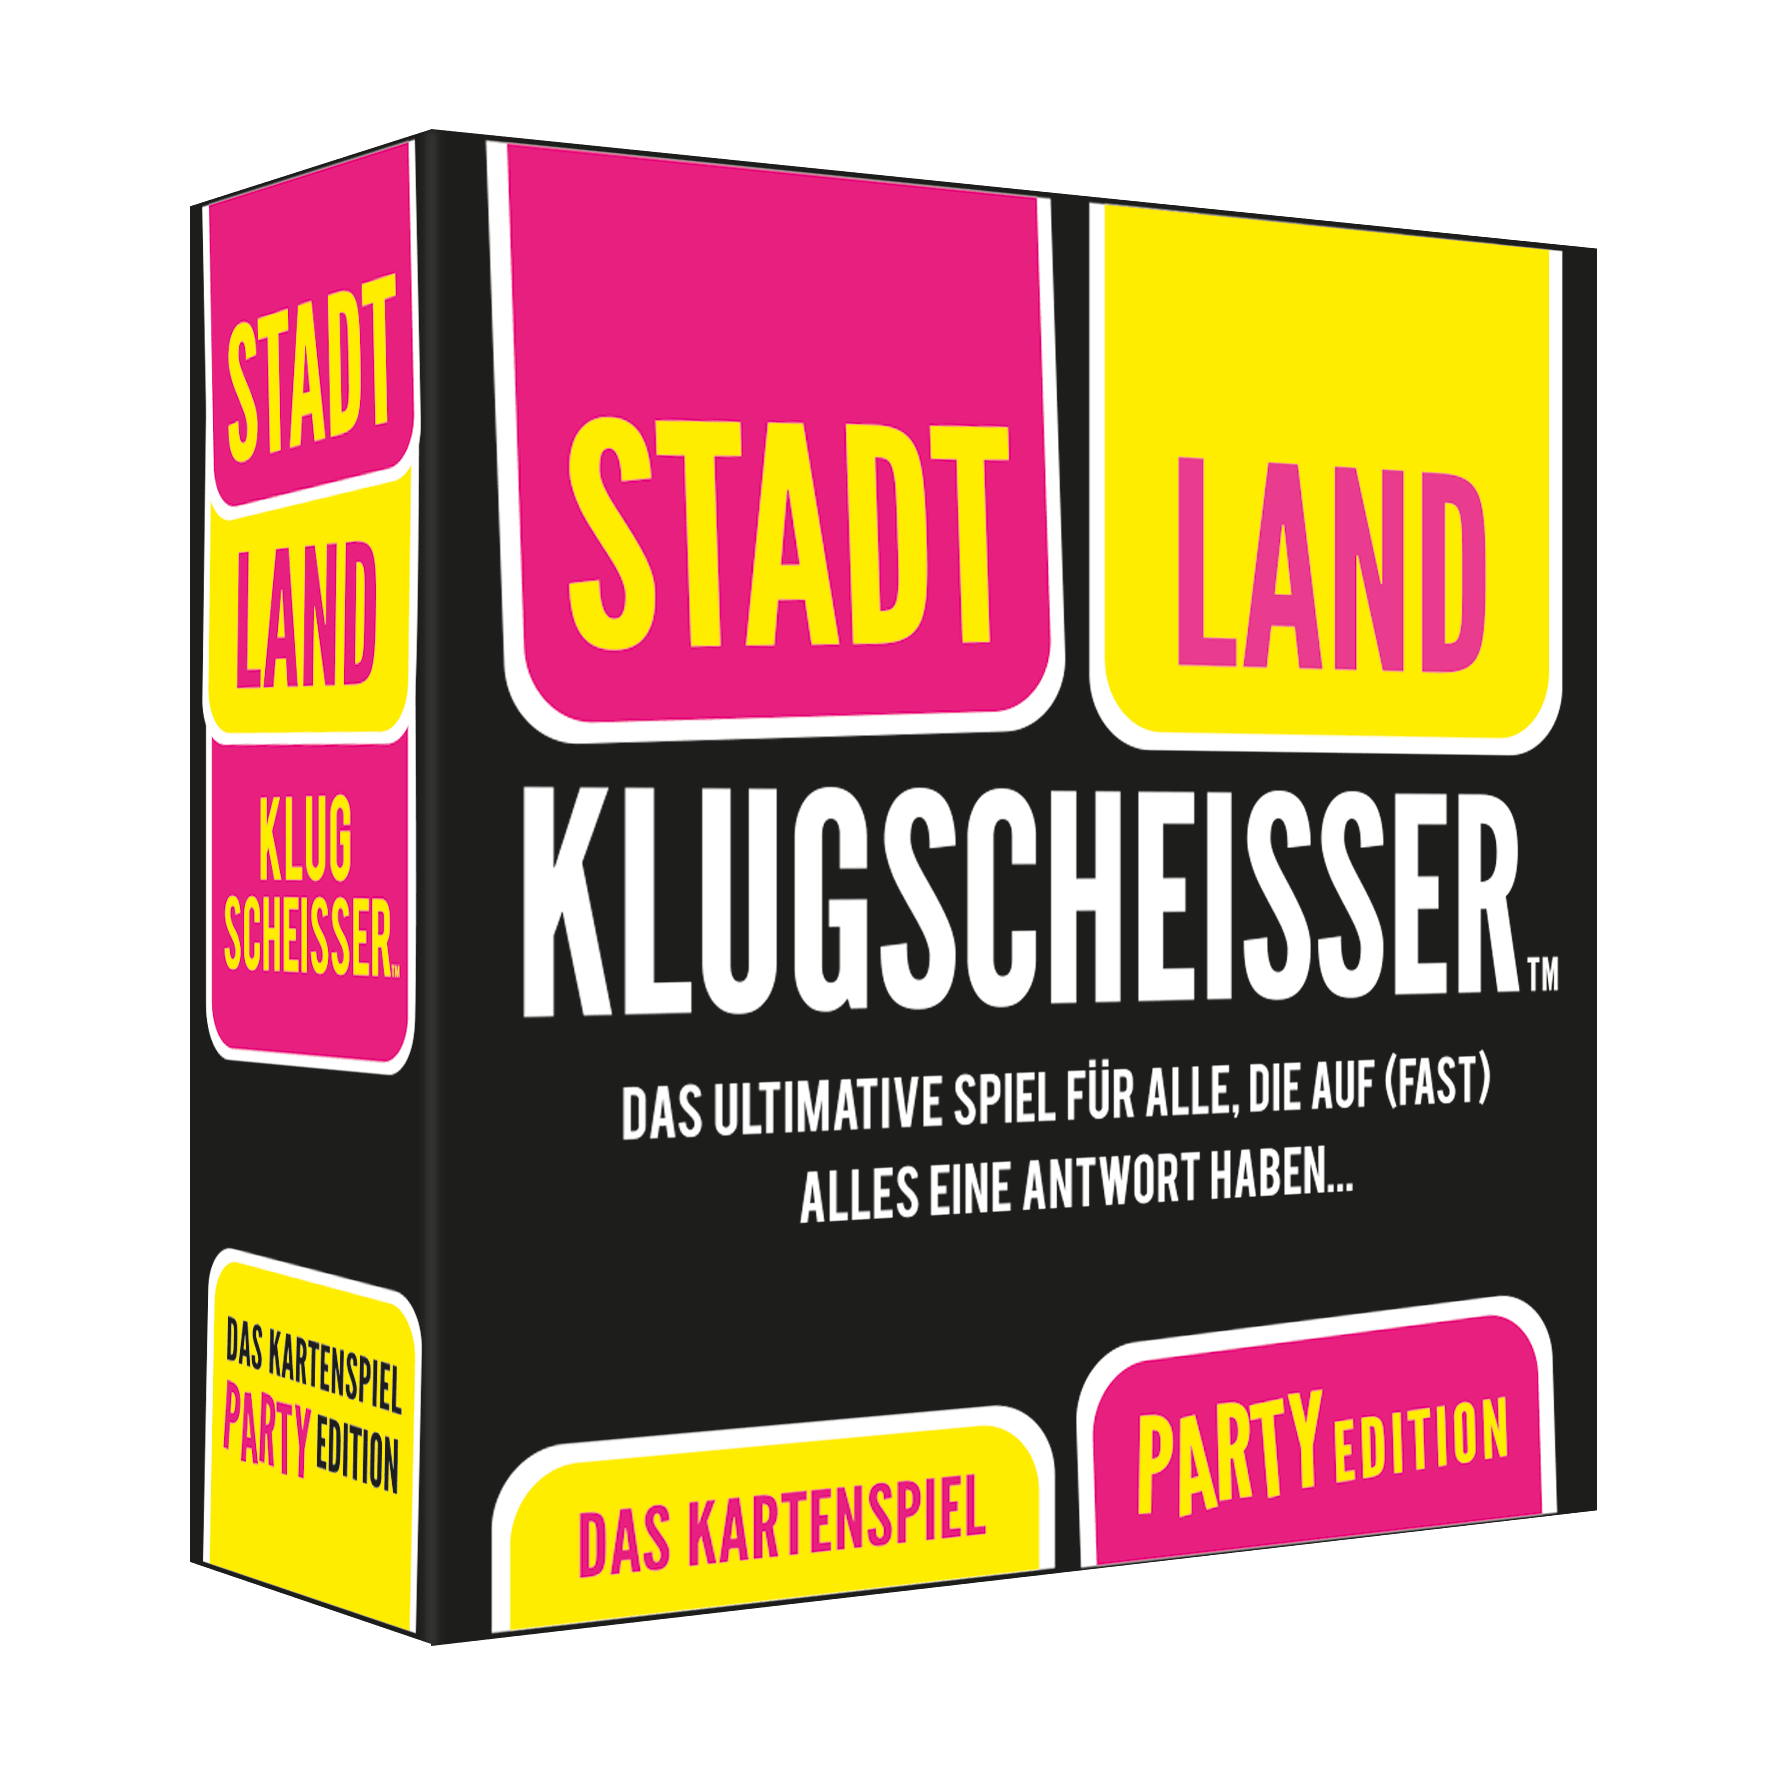 Kartenspiel Stadt Land Klugscheisser - 4305 kunstundspiel 